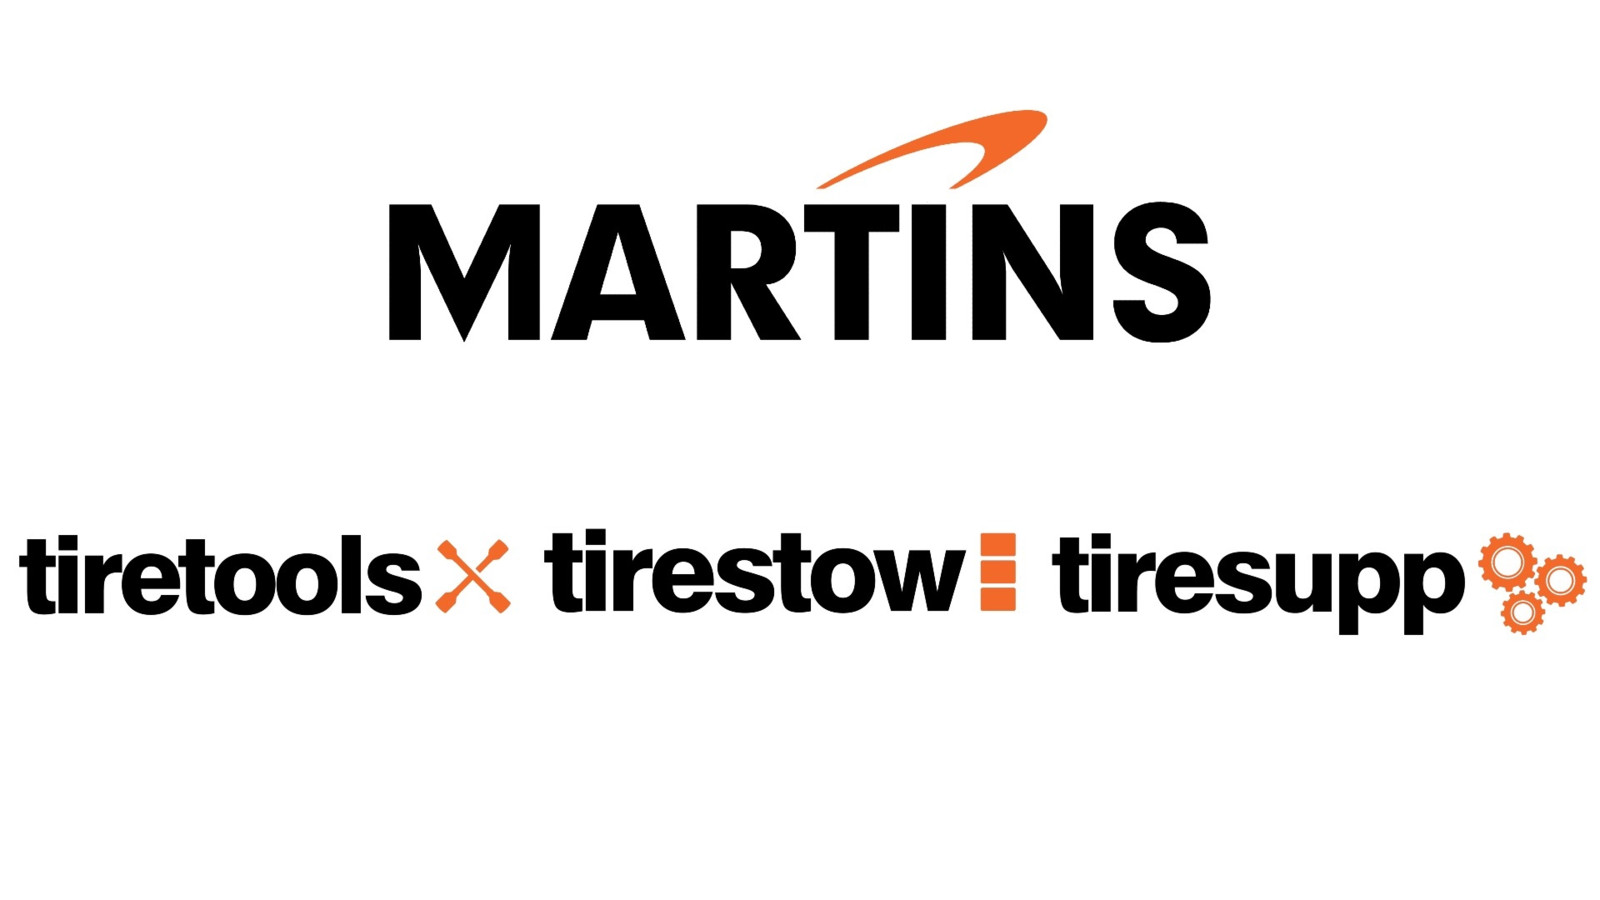 Mit den drei neuen Submarken „tiretools“, „tirestow“ und „tiresupp“ will Martins seine Dienstleistungspalette erweitern.